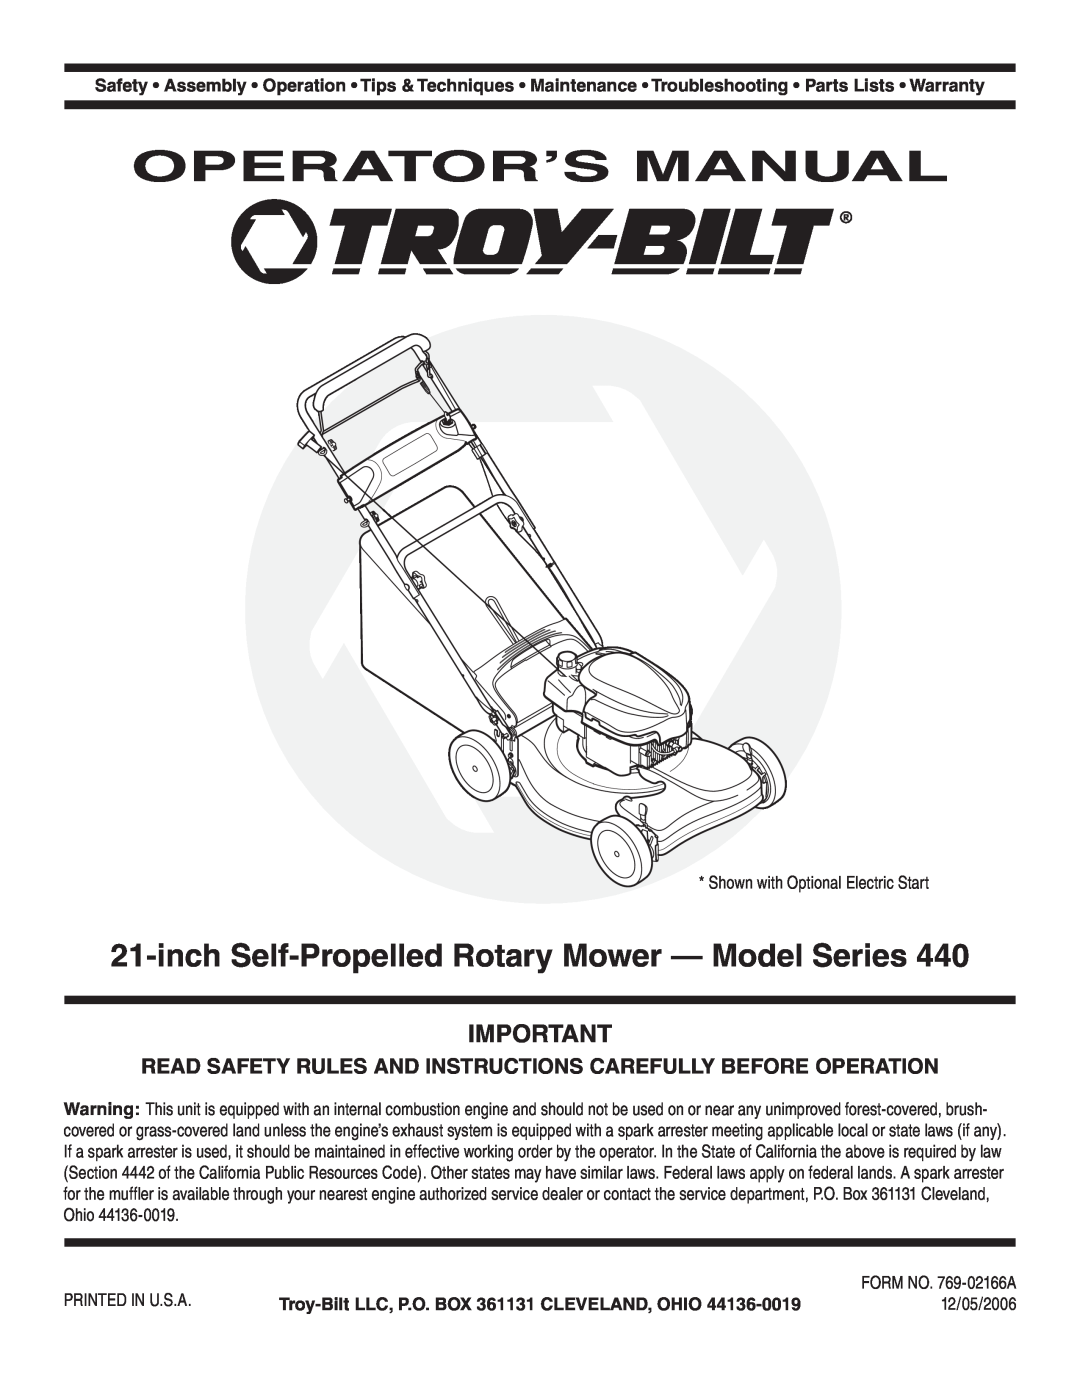 Troy-Bilt 440 warranty Operator’S Manual, inch Self-PropelledRotary Mower - Model Series, 12/05/2006 